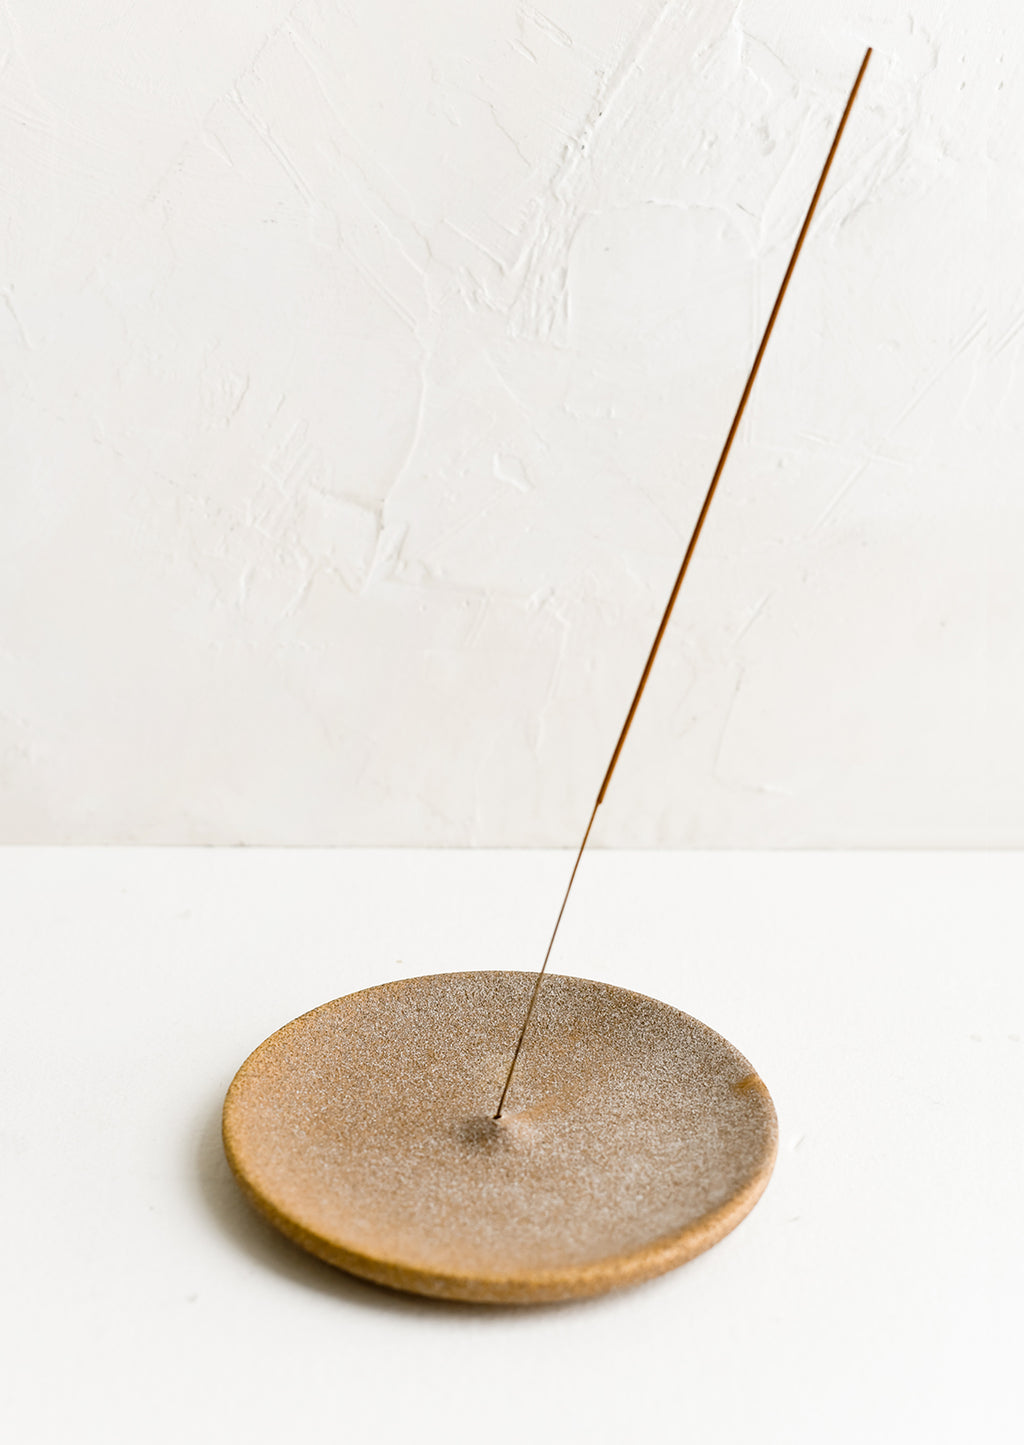 2: A sandy brown ceramic incense holder holding incense stick.